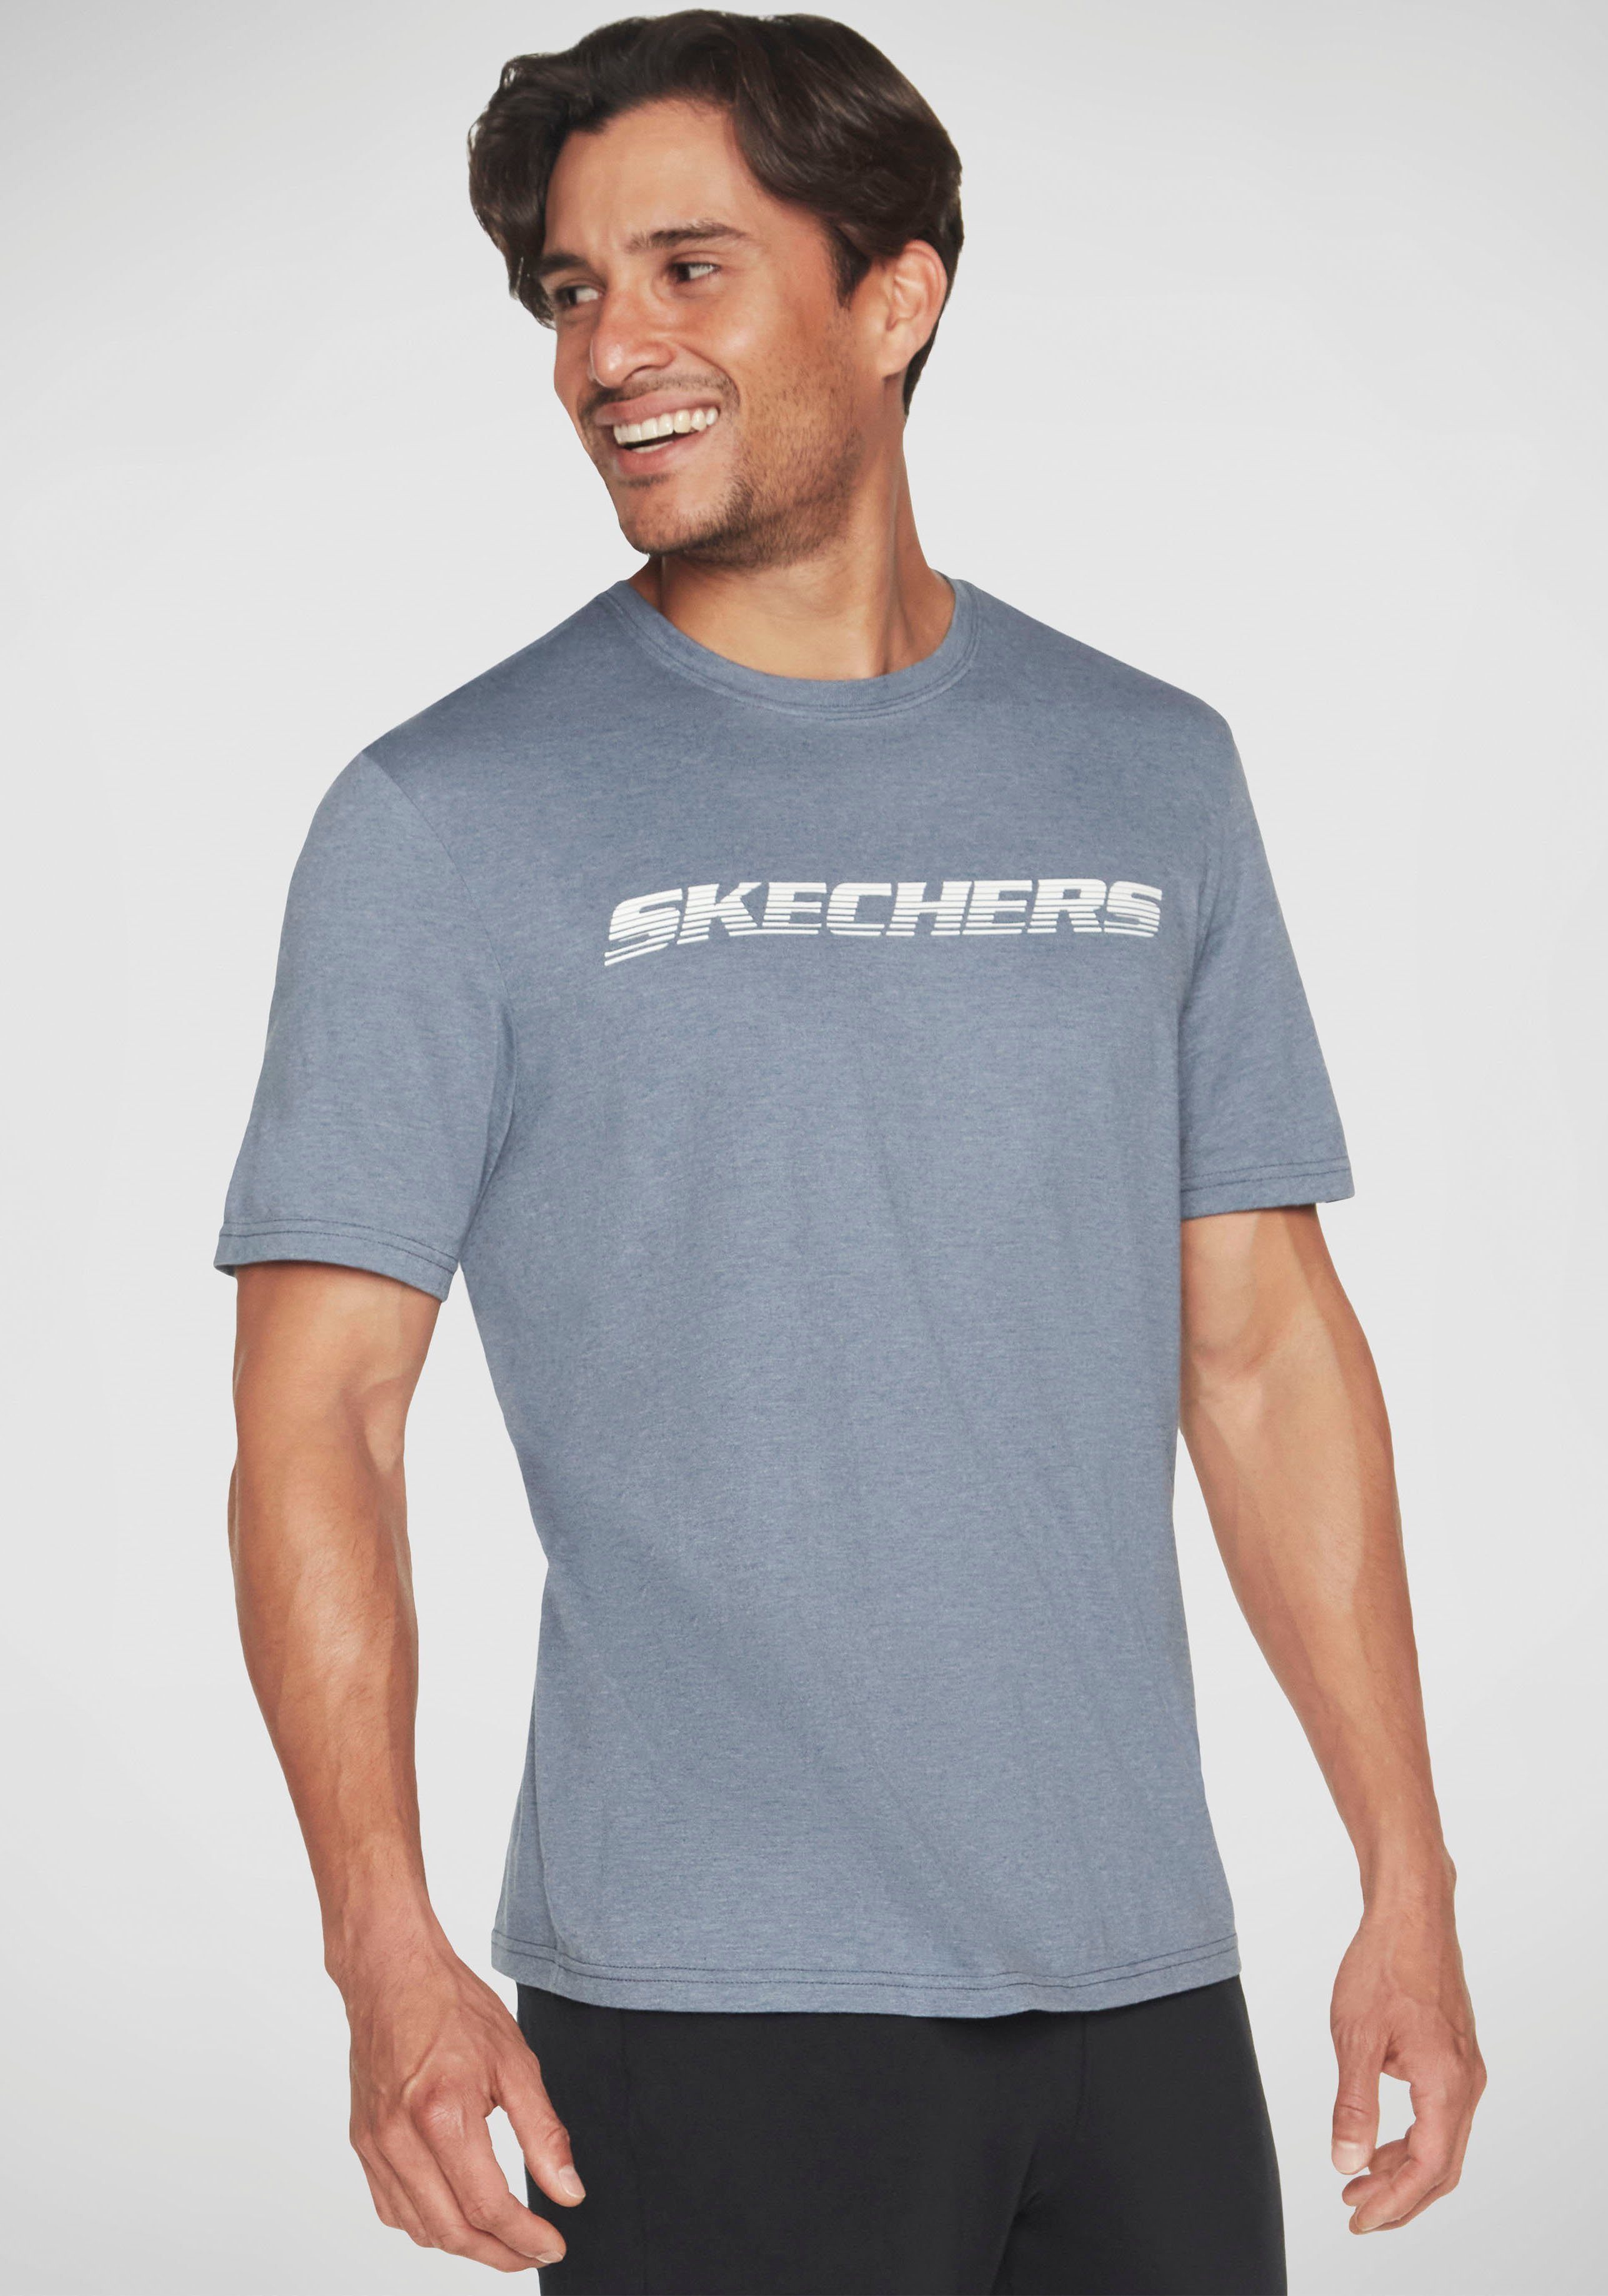 TEE Skechers MOTION T-Shirt blaugrau